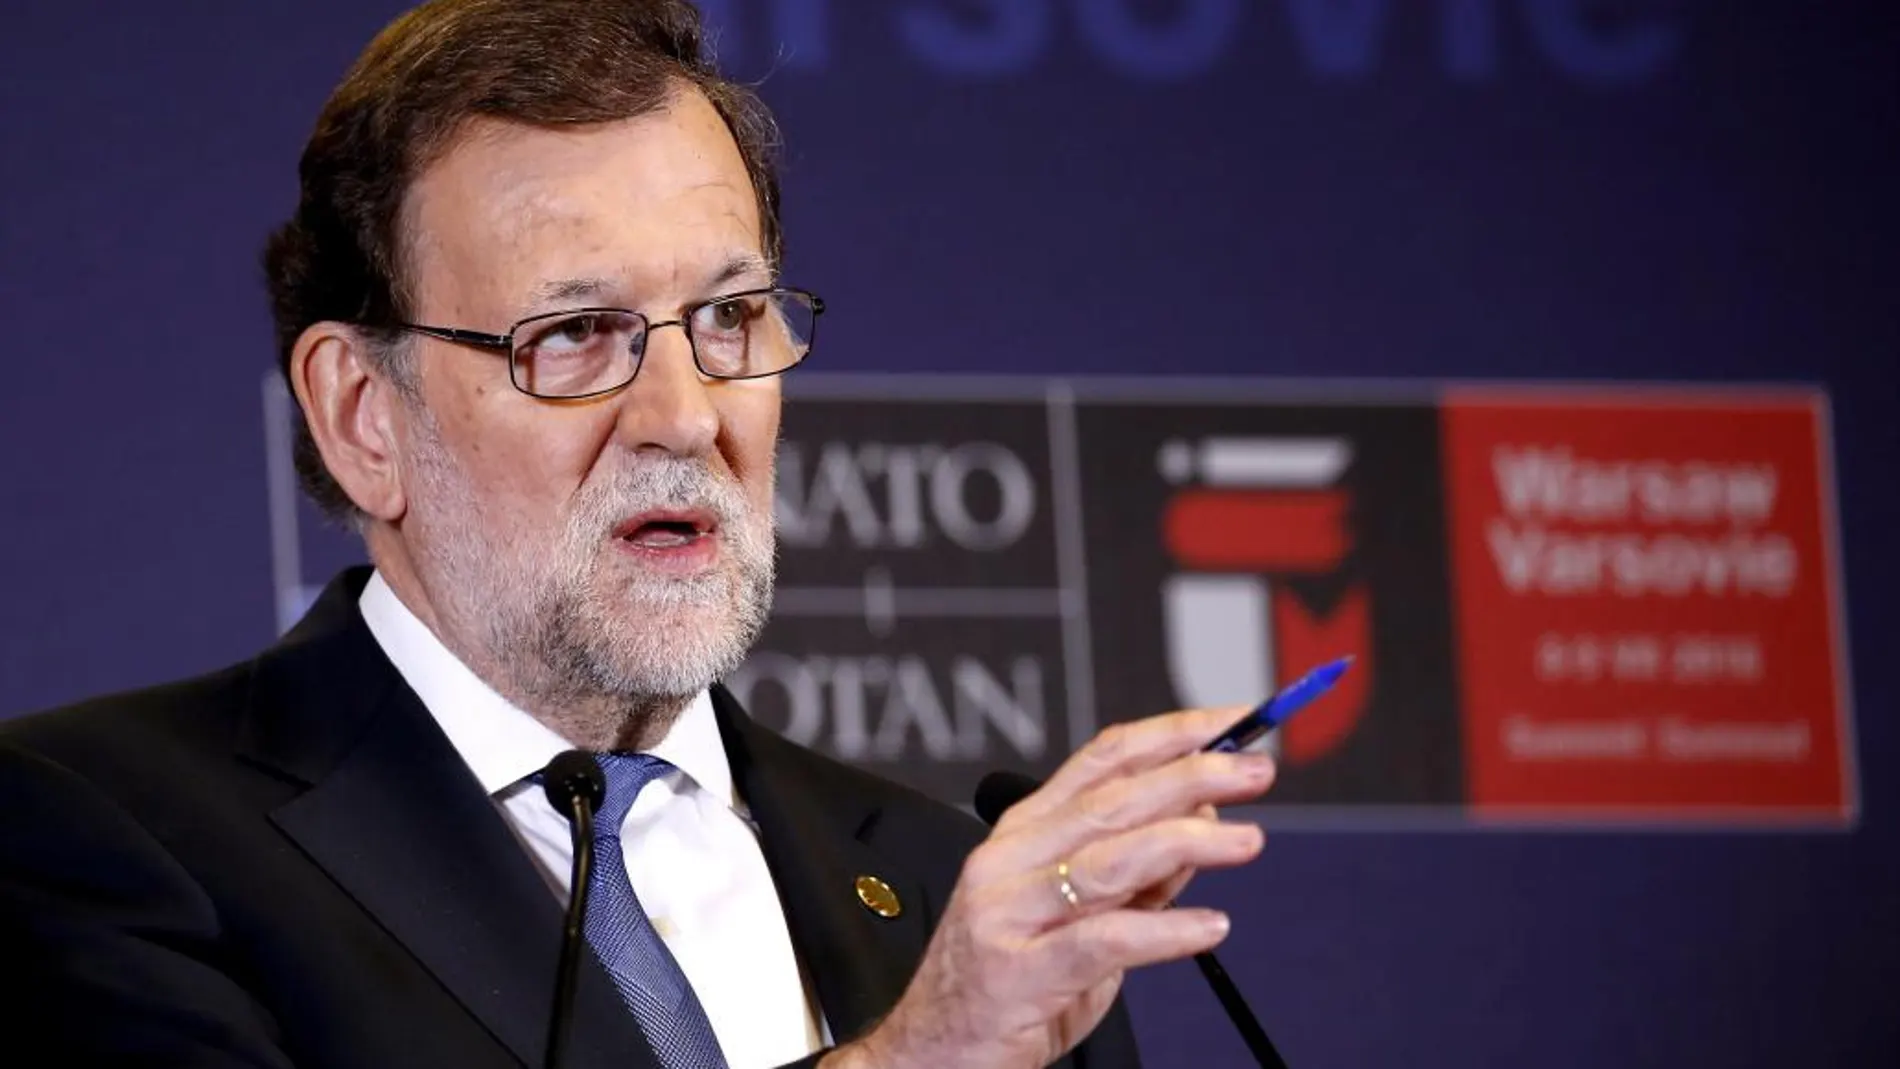 El presidente del Gobierno español en funciones, Mariano Rajoy, durante la rueda de prensa posterior a la sesión plenaria del Consejo del Atlántico Norte